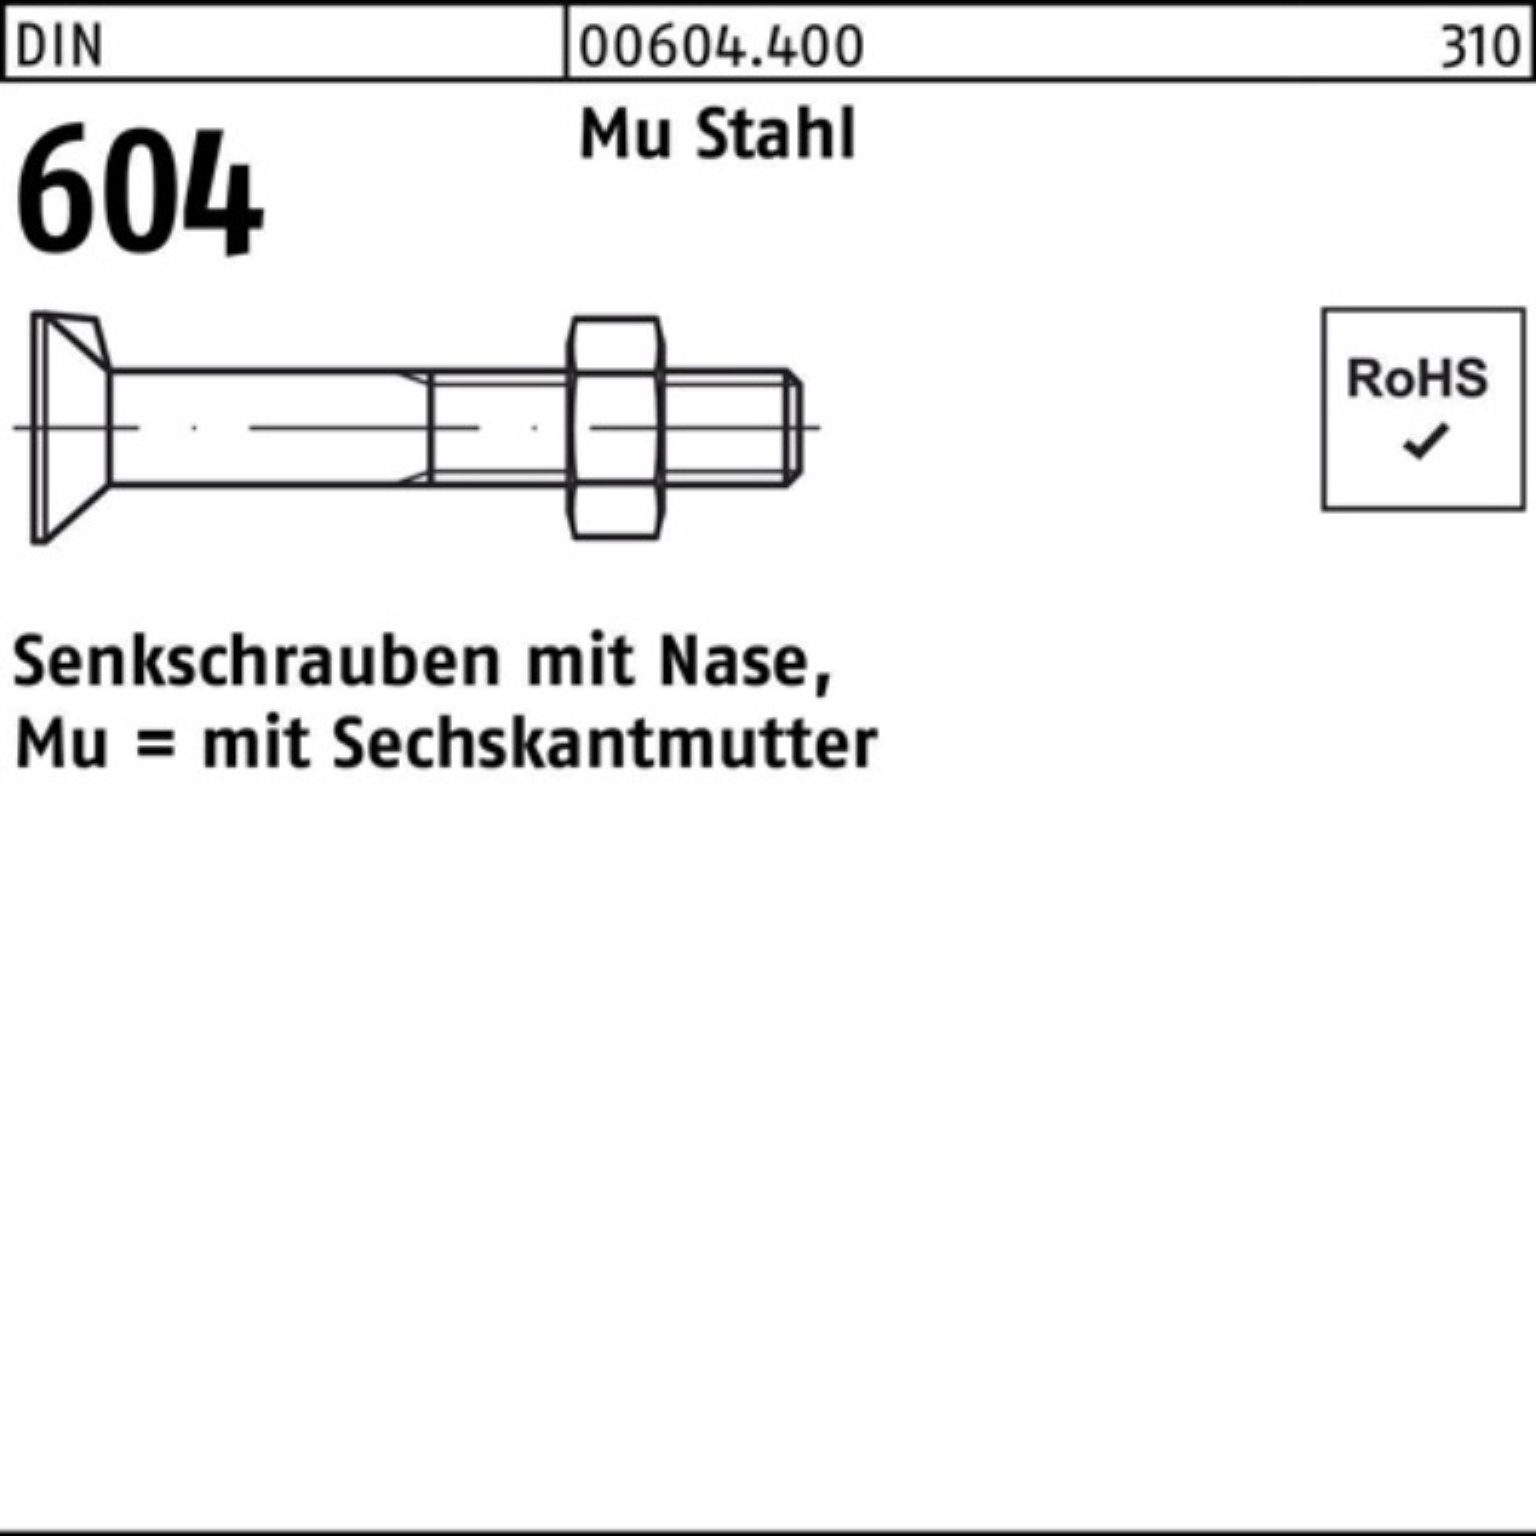 Reyher Senkschraube 100er Pack Senkschraube DIN 604 Nase/6-ktmutter M12x 90 Mu Stahl 4.6 5